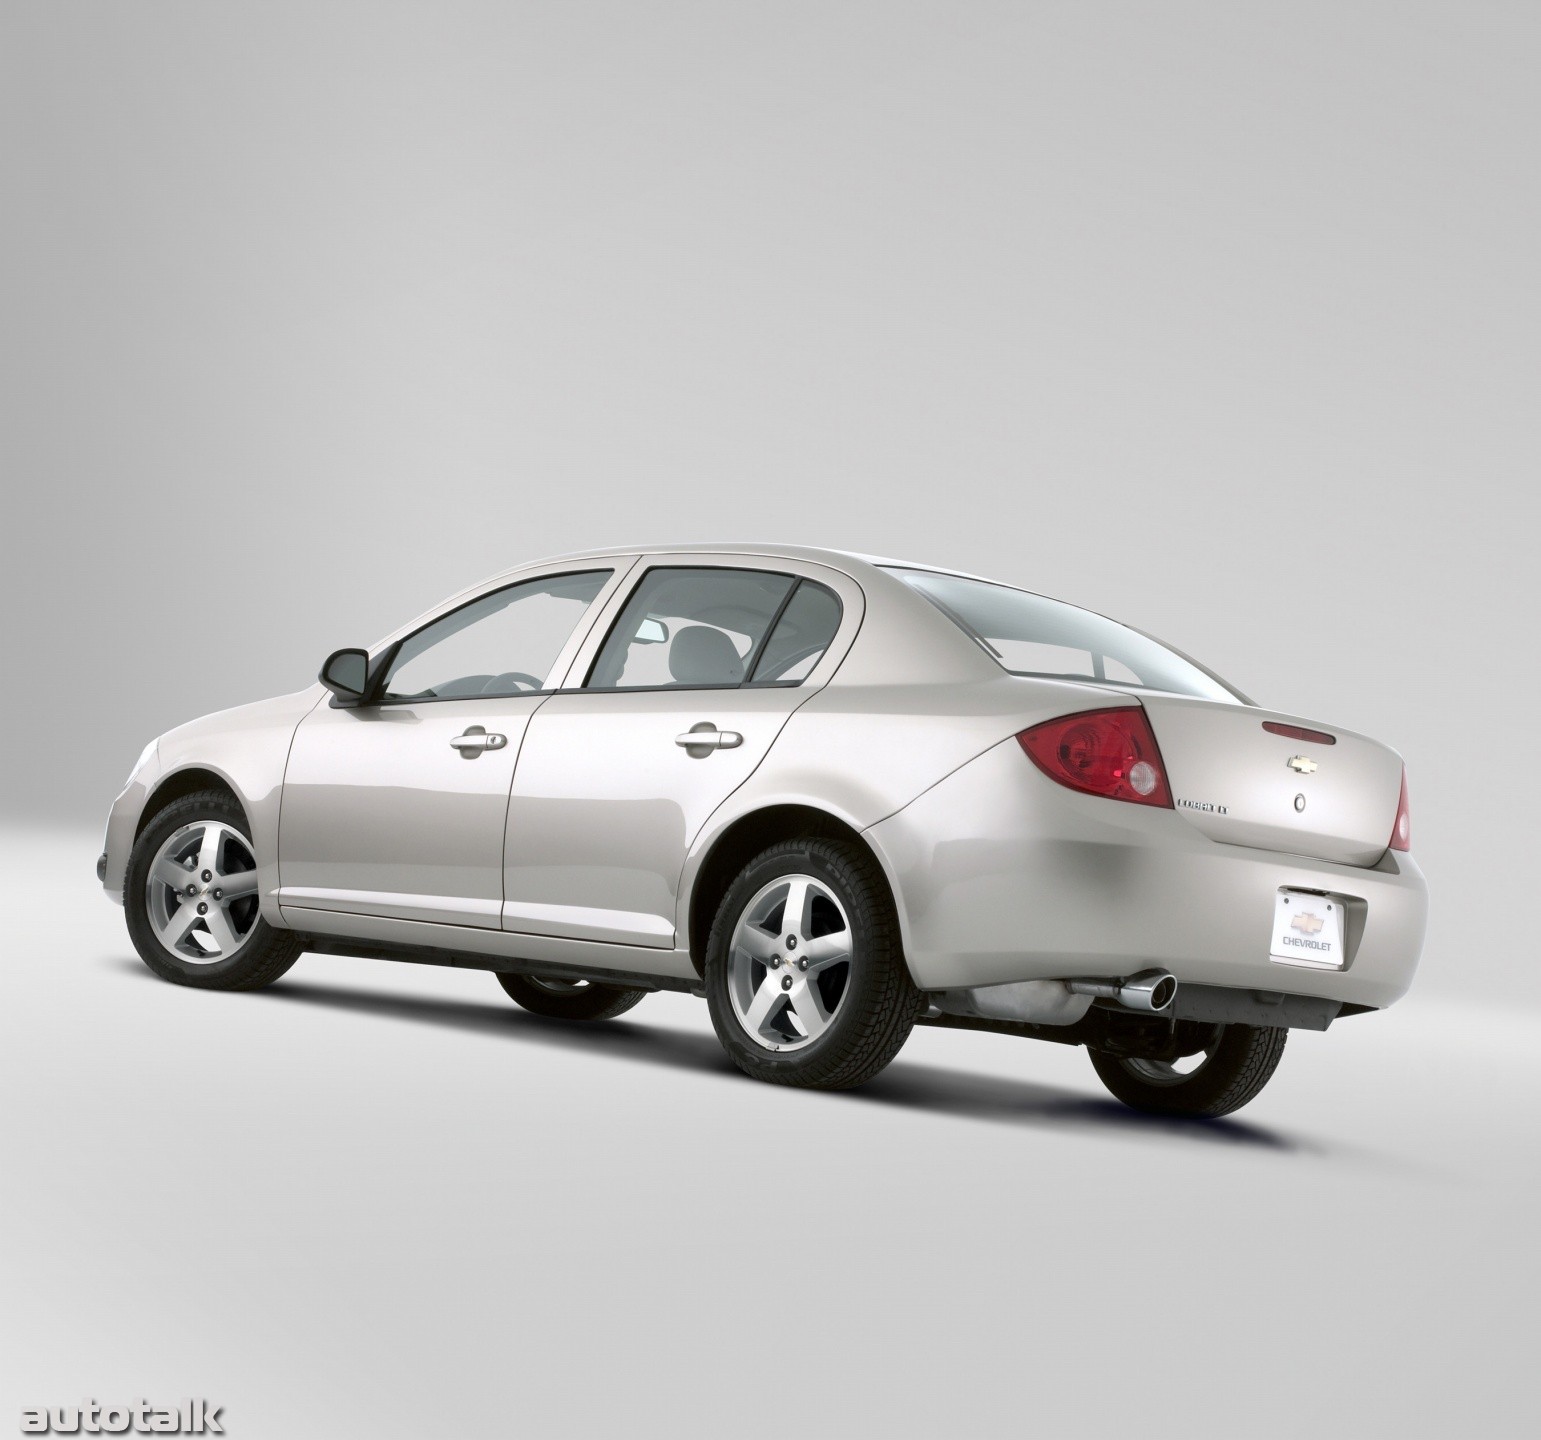 2005 Chevrolet Cobalt Sedan